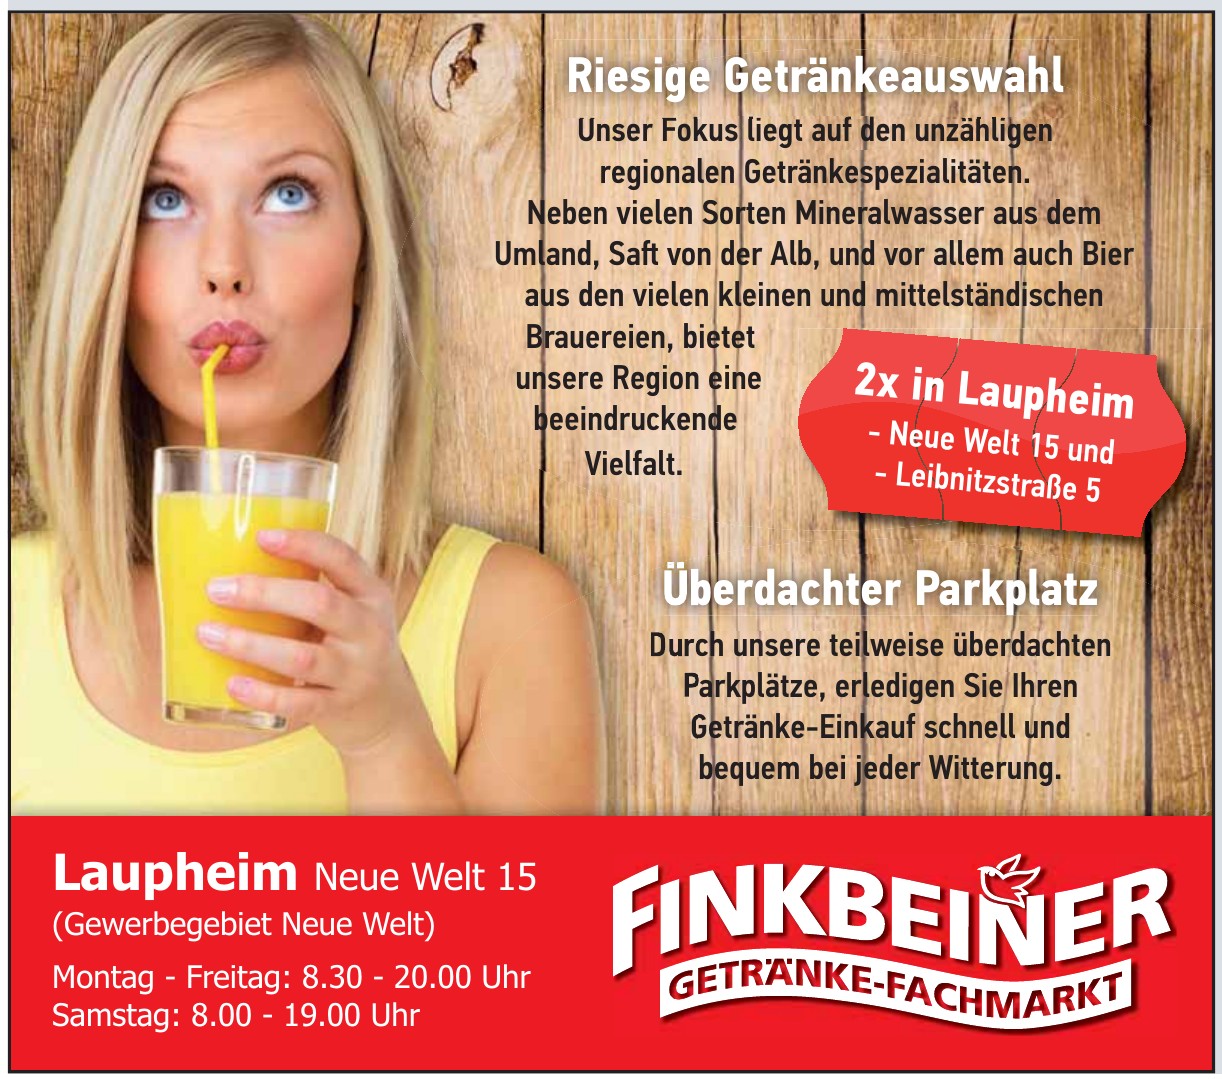 Finkbeiner Getränkemarkt – Der Getränke-Fachmarkt in Ulm und in der Region